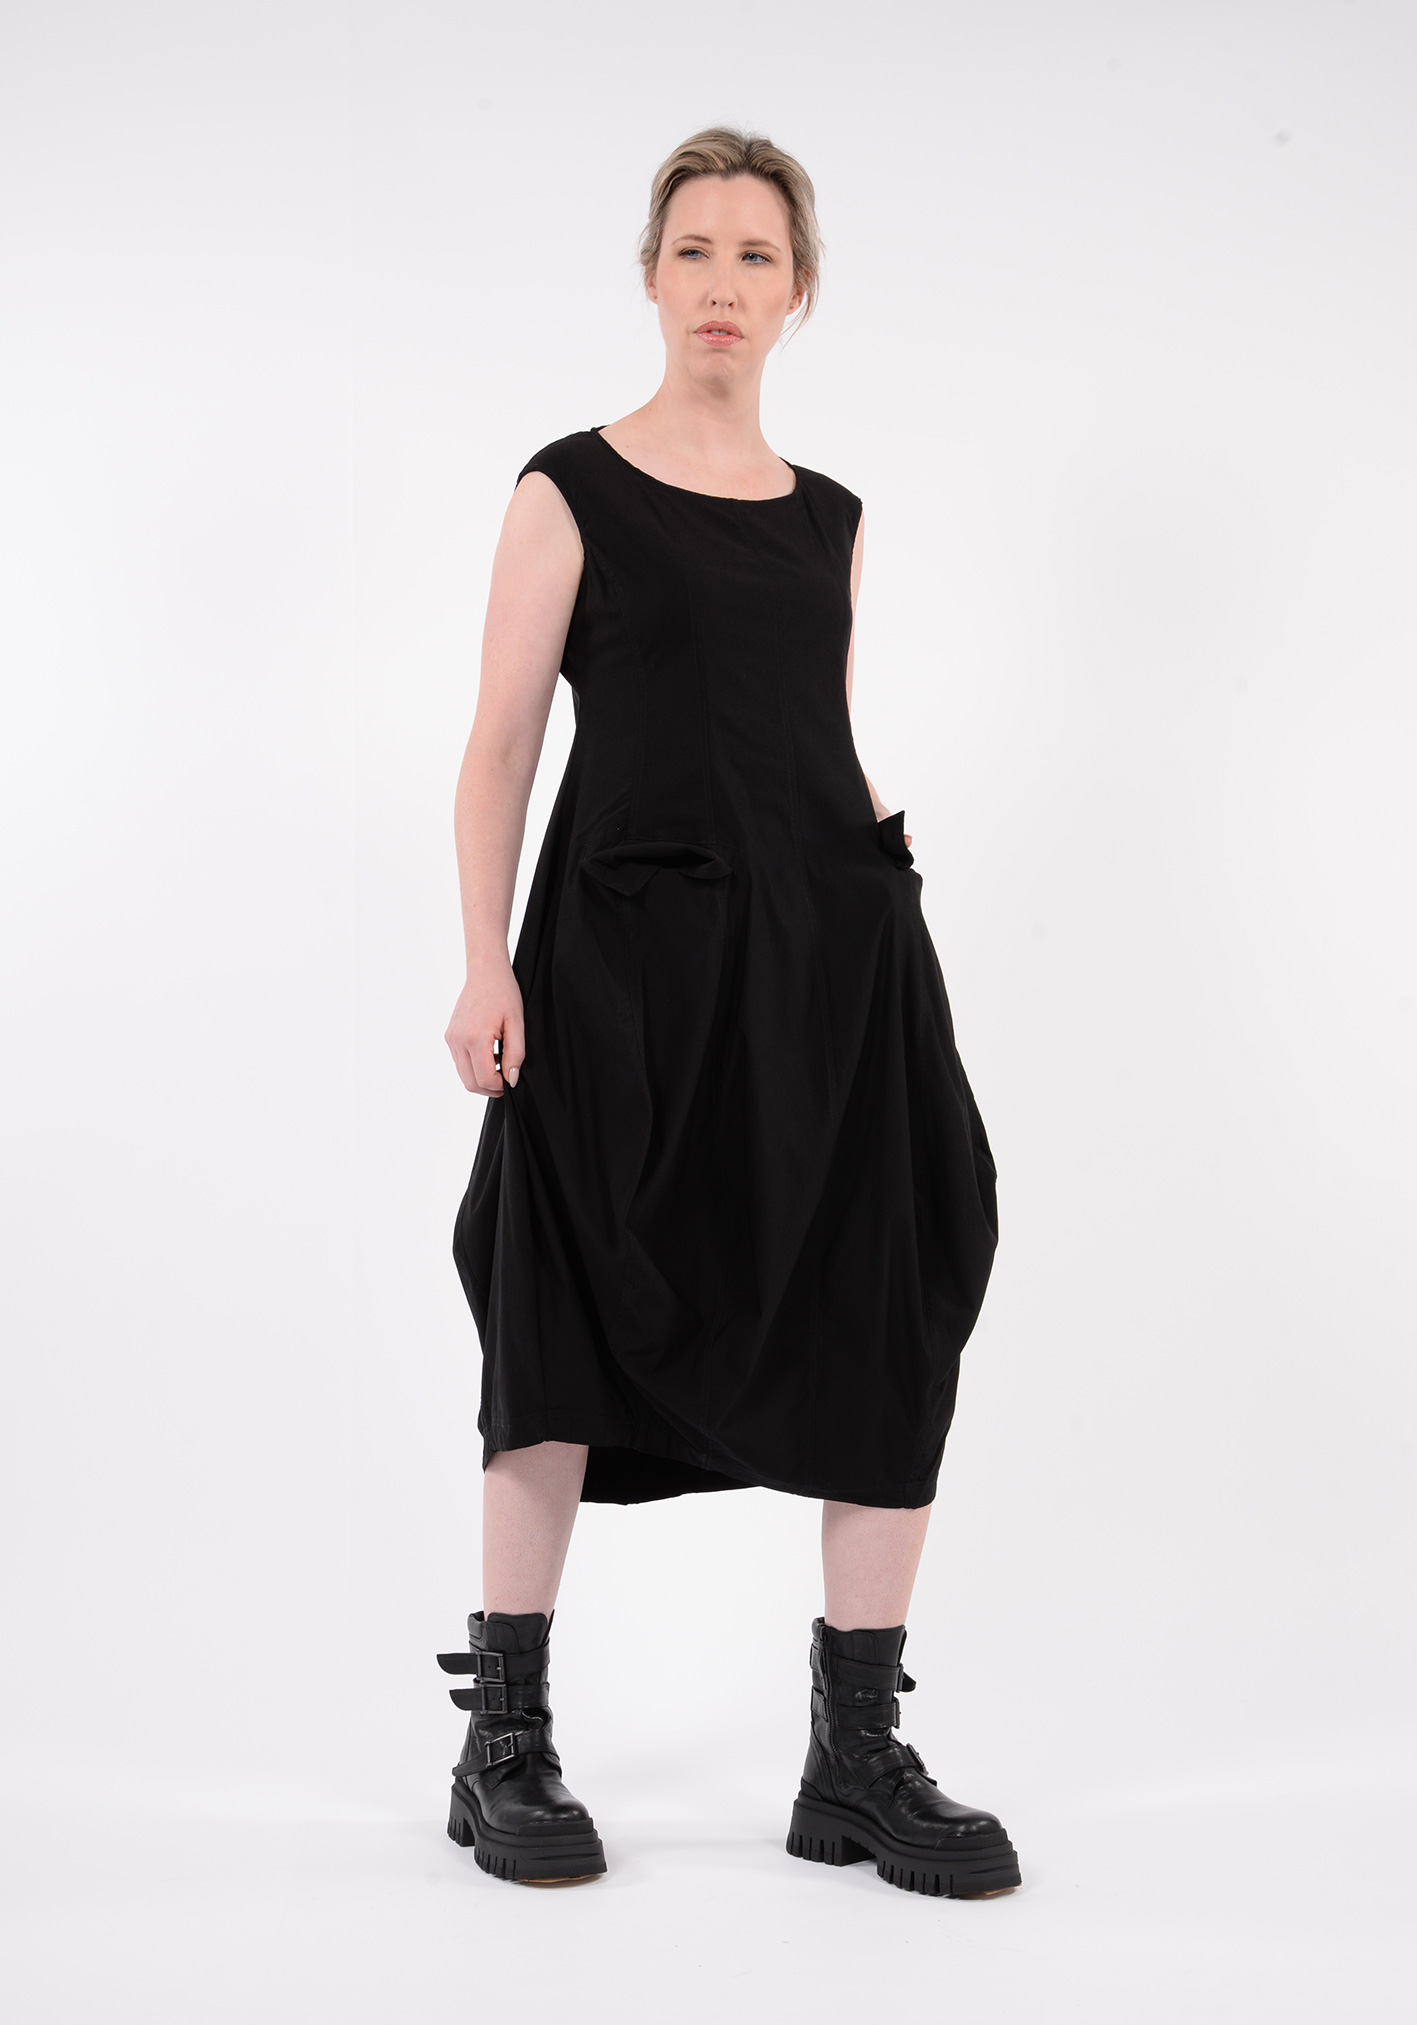 STUDIO RUNDHOLZ BLACK LABEL - PANELLED DRESS WITH POCKET FLAPS - BLACK